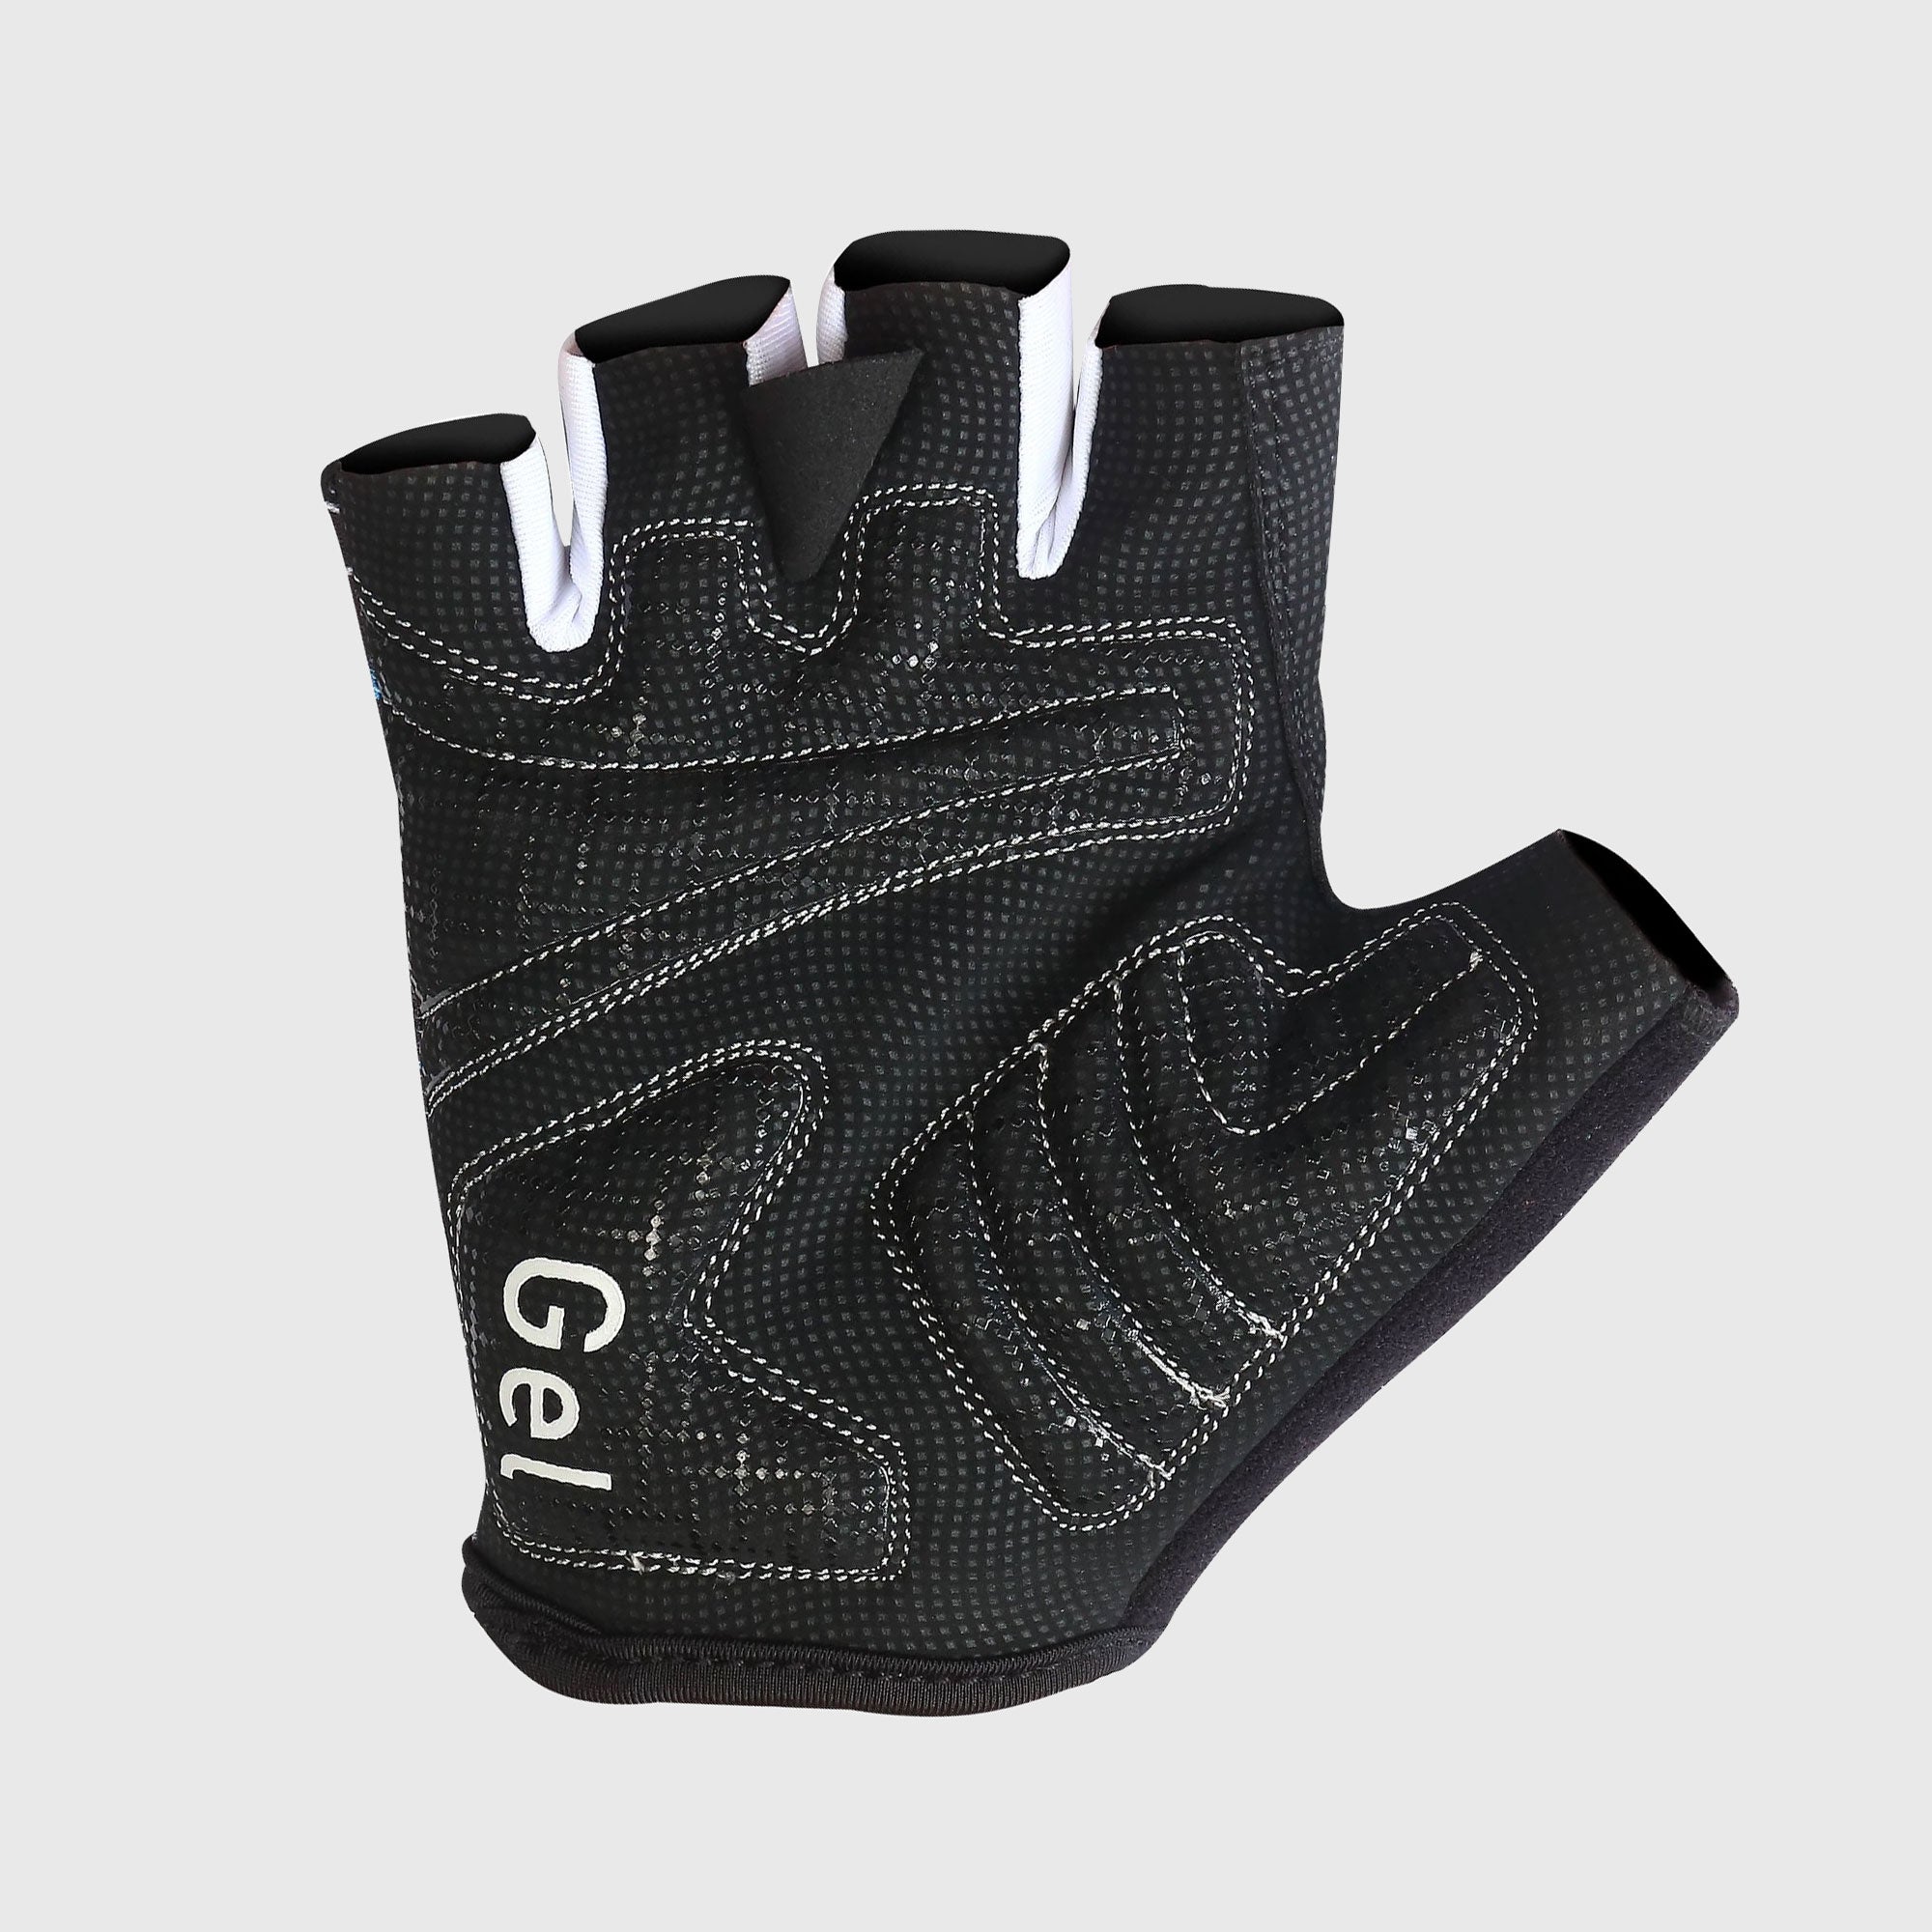 Fdx Vega Black Gel Padded Short Finger Summer Cycling Gloves